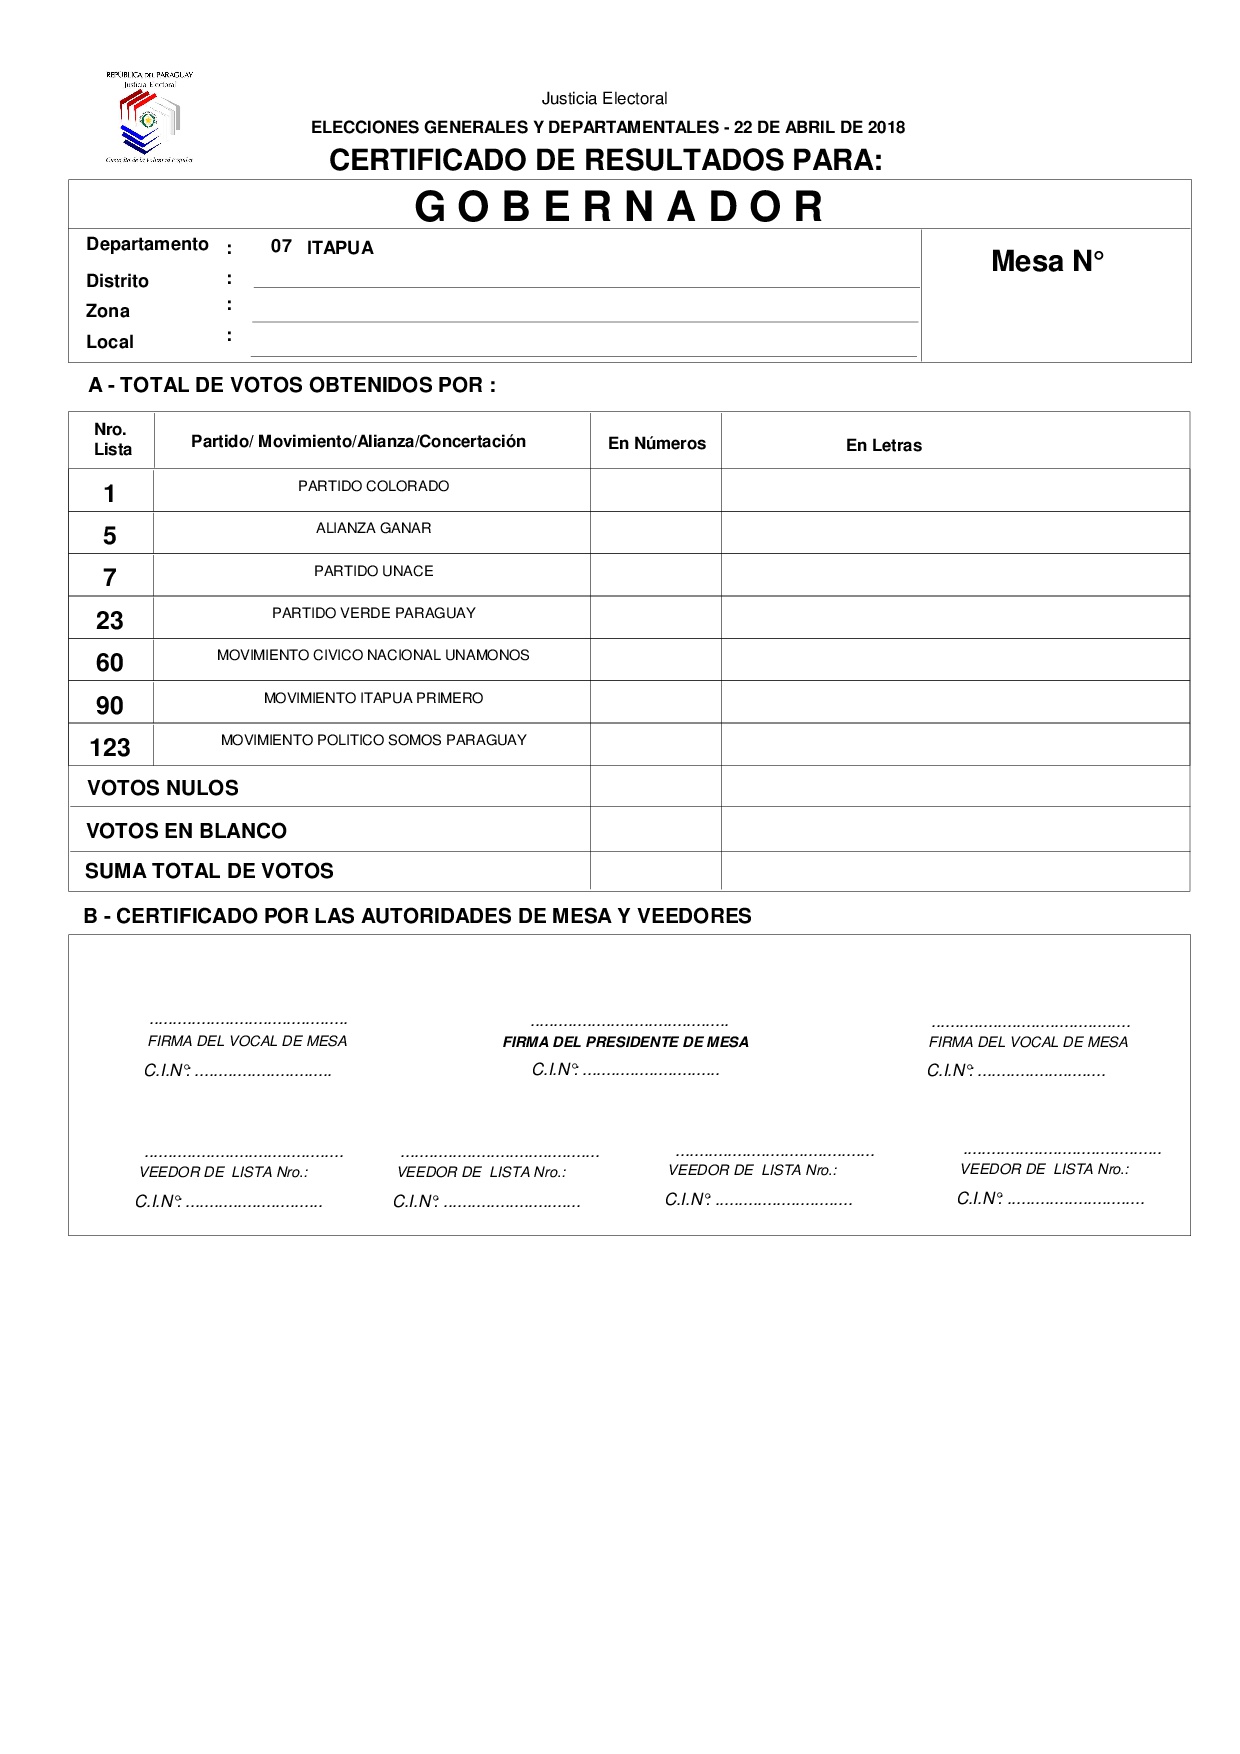 Certificado de Resultados Para GOBERNADOR de ITAPUA